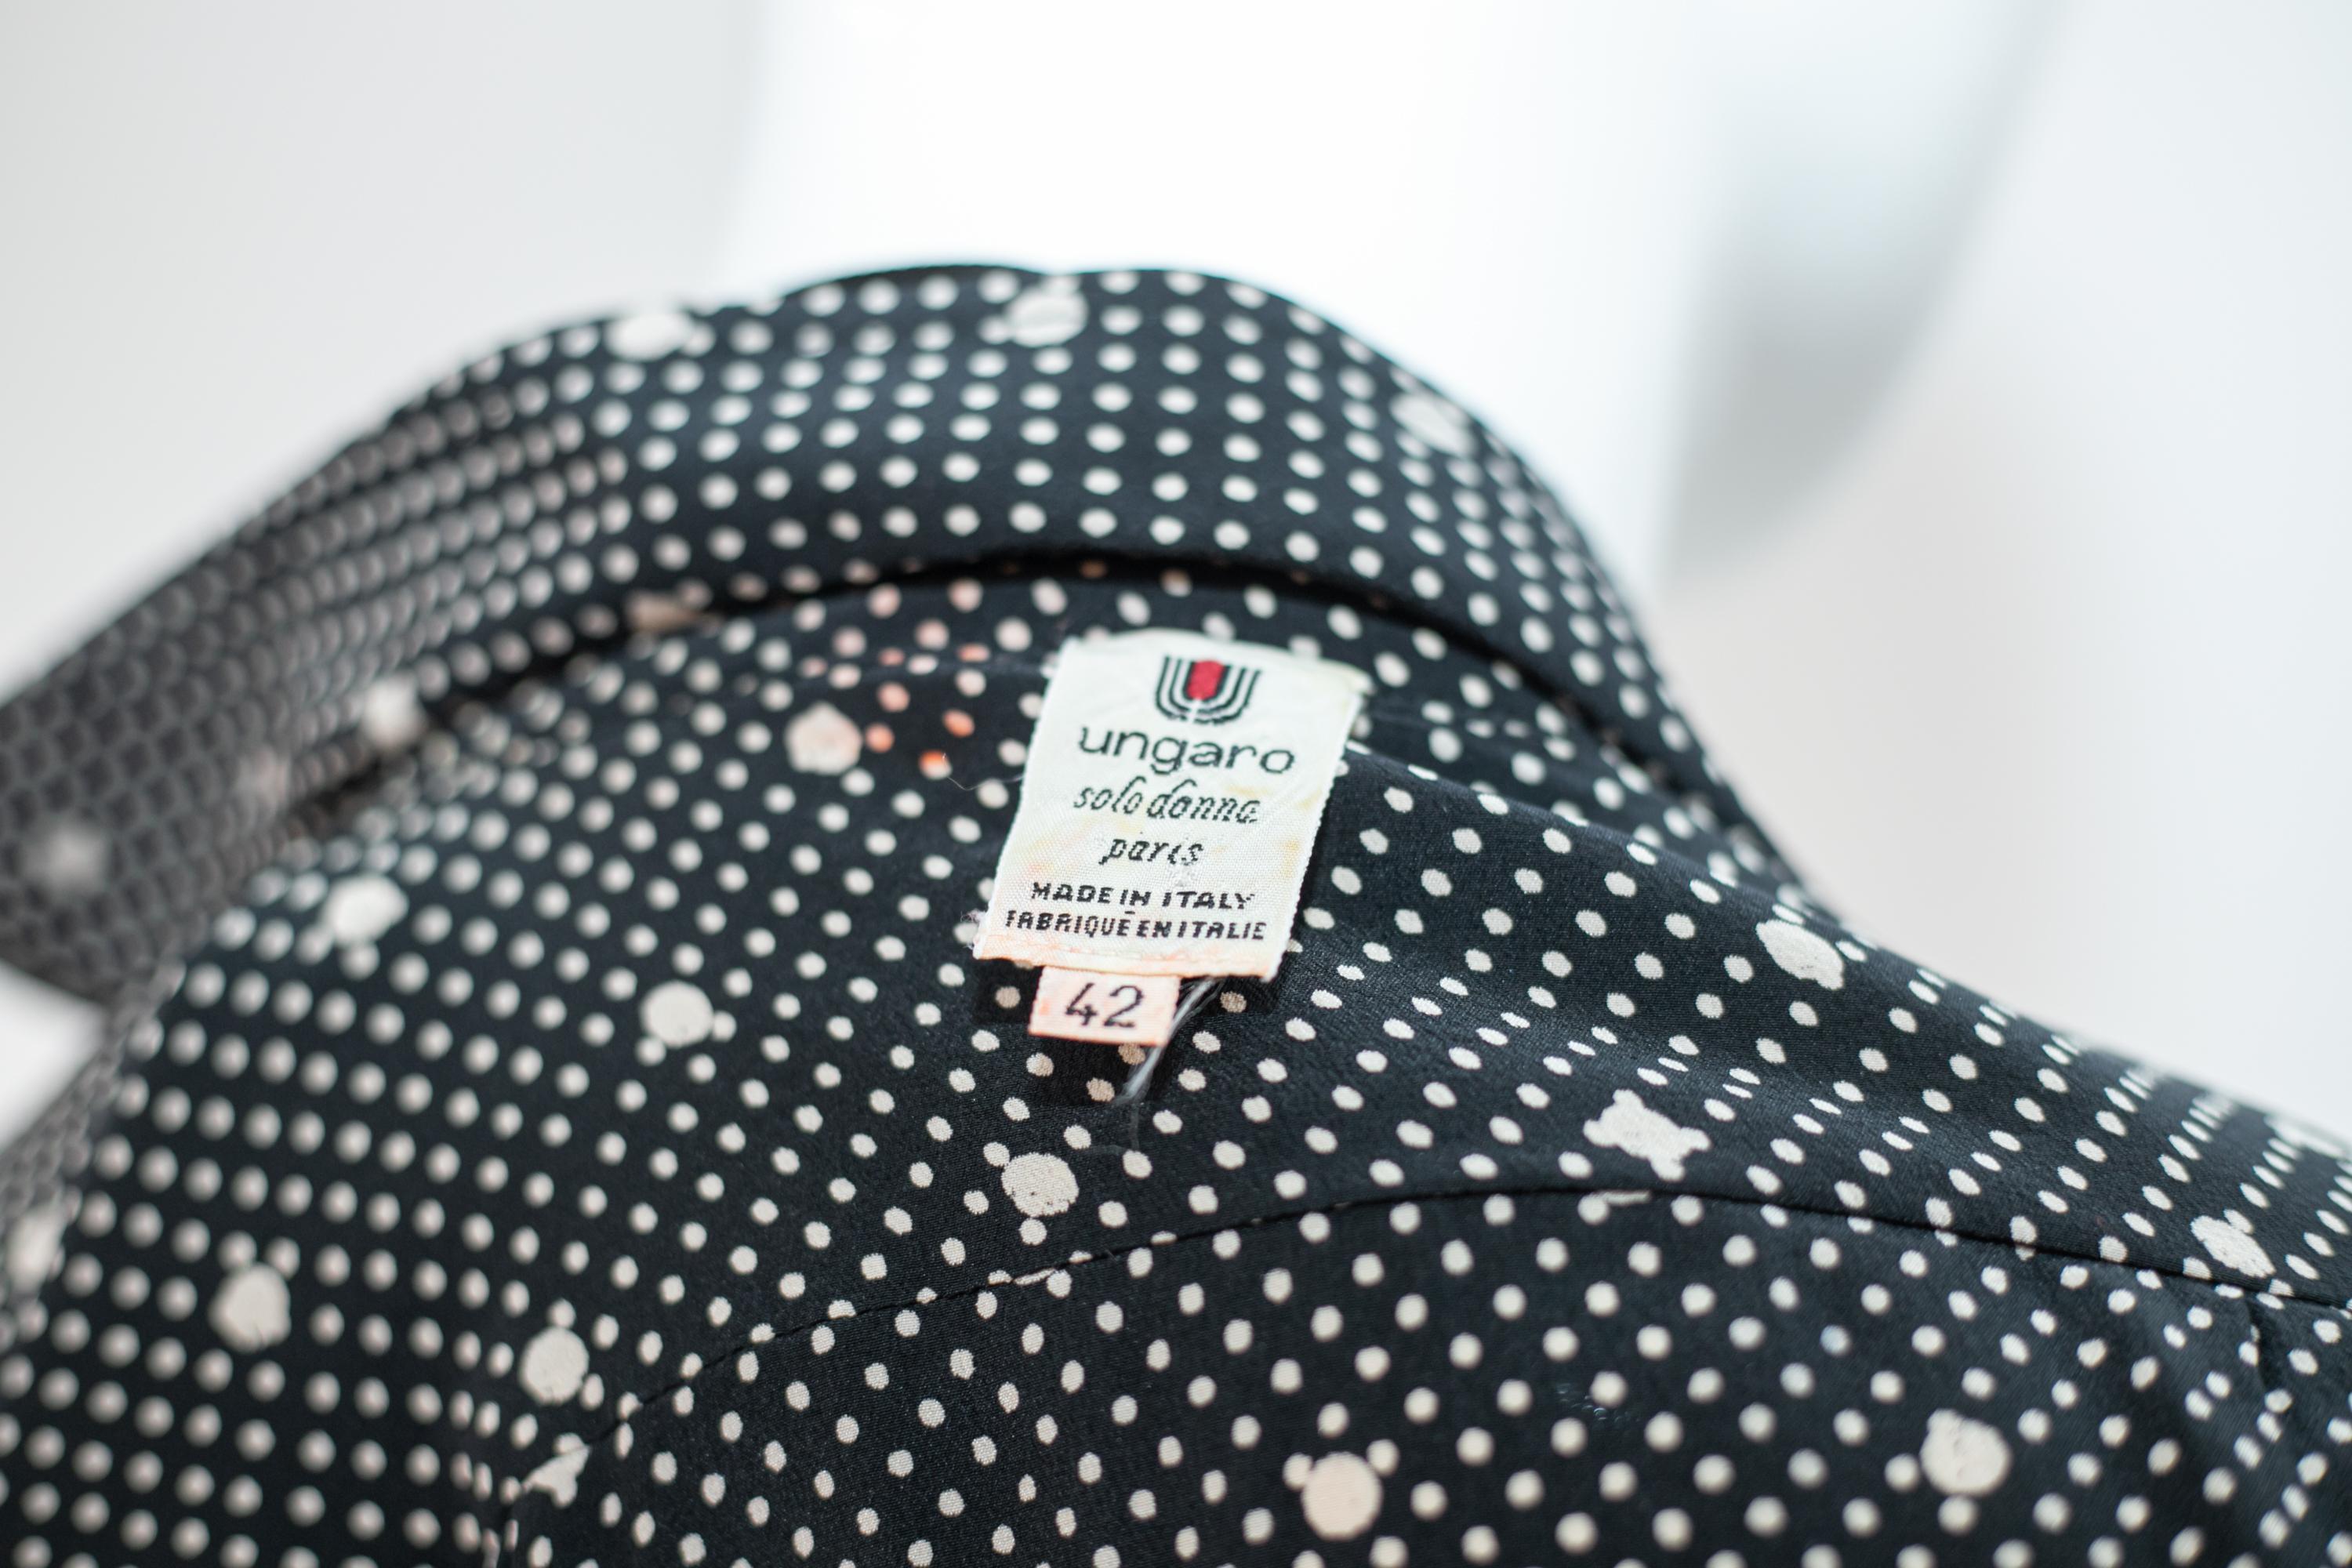 Charmante gepunktete Bluse, entworfen von Emanuel Ungaro in den 1990er Jahren, hergestellt in Italien.
Das Hemd hat zwei Hauptfarben, schwarz und weiß. Es hat lange, weiche Ärmel mit schmalen Manschetten, die einen sehr charmanten und süßen Effekt